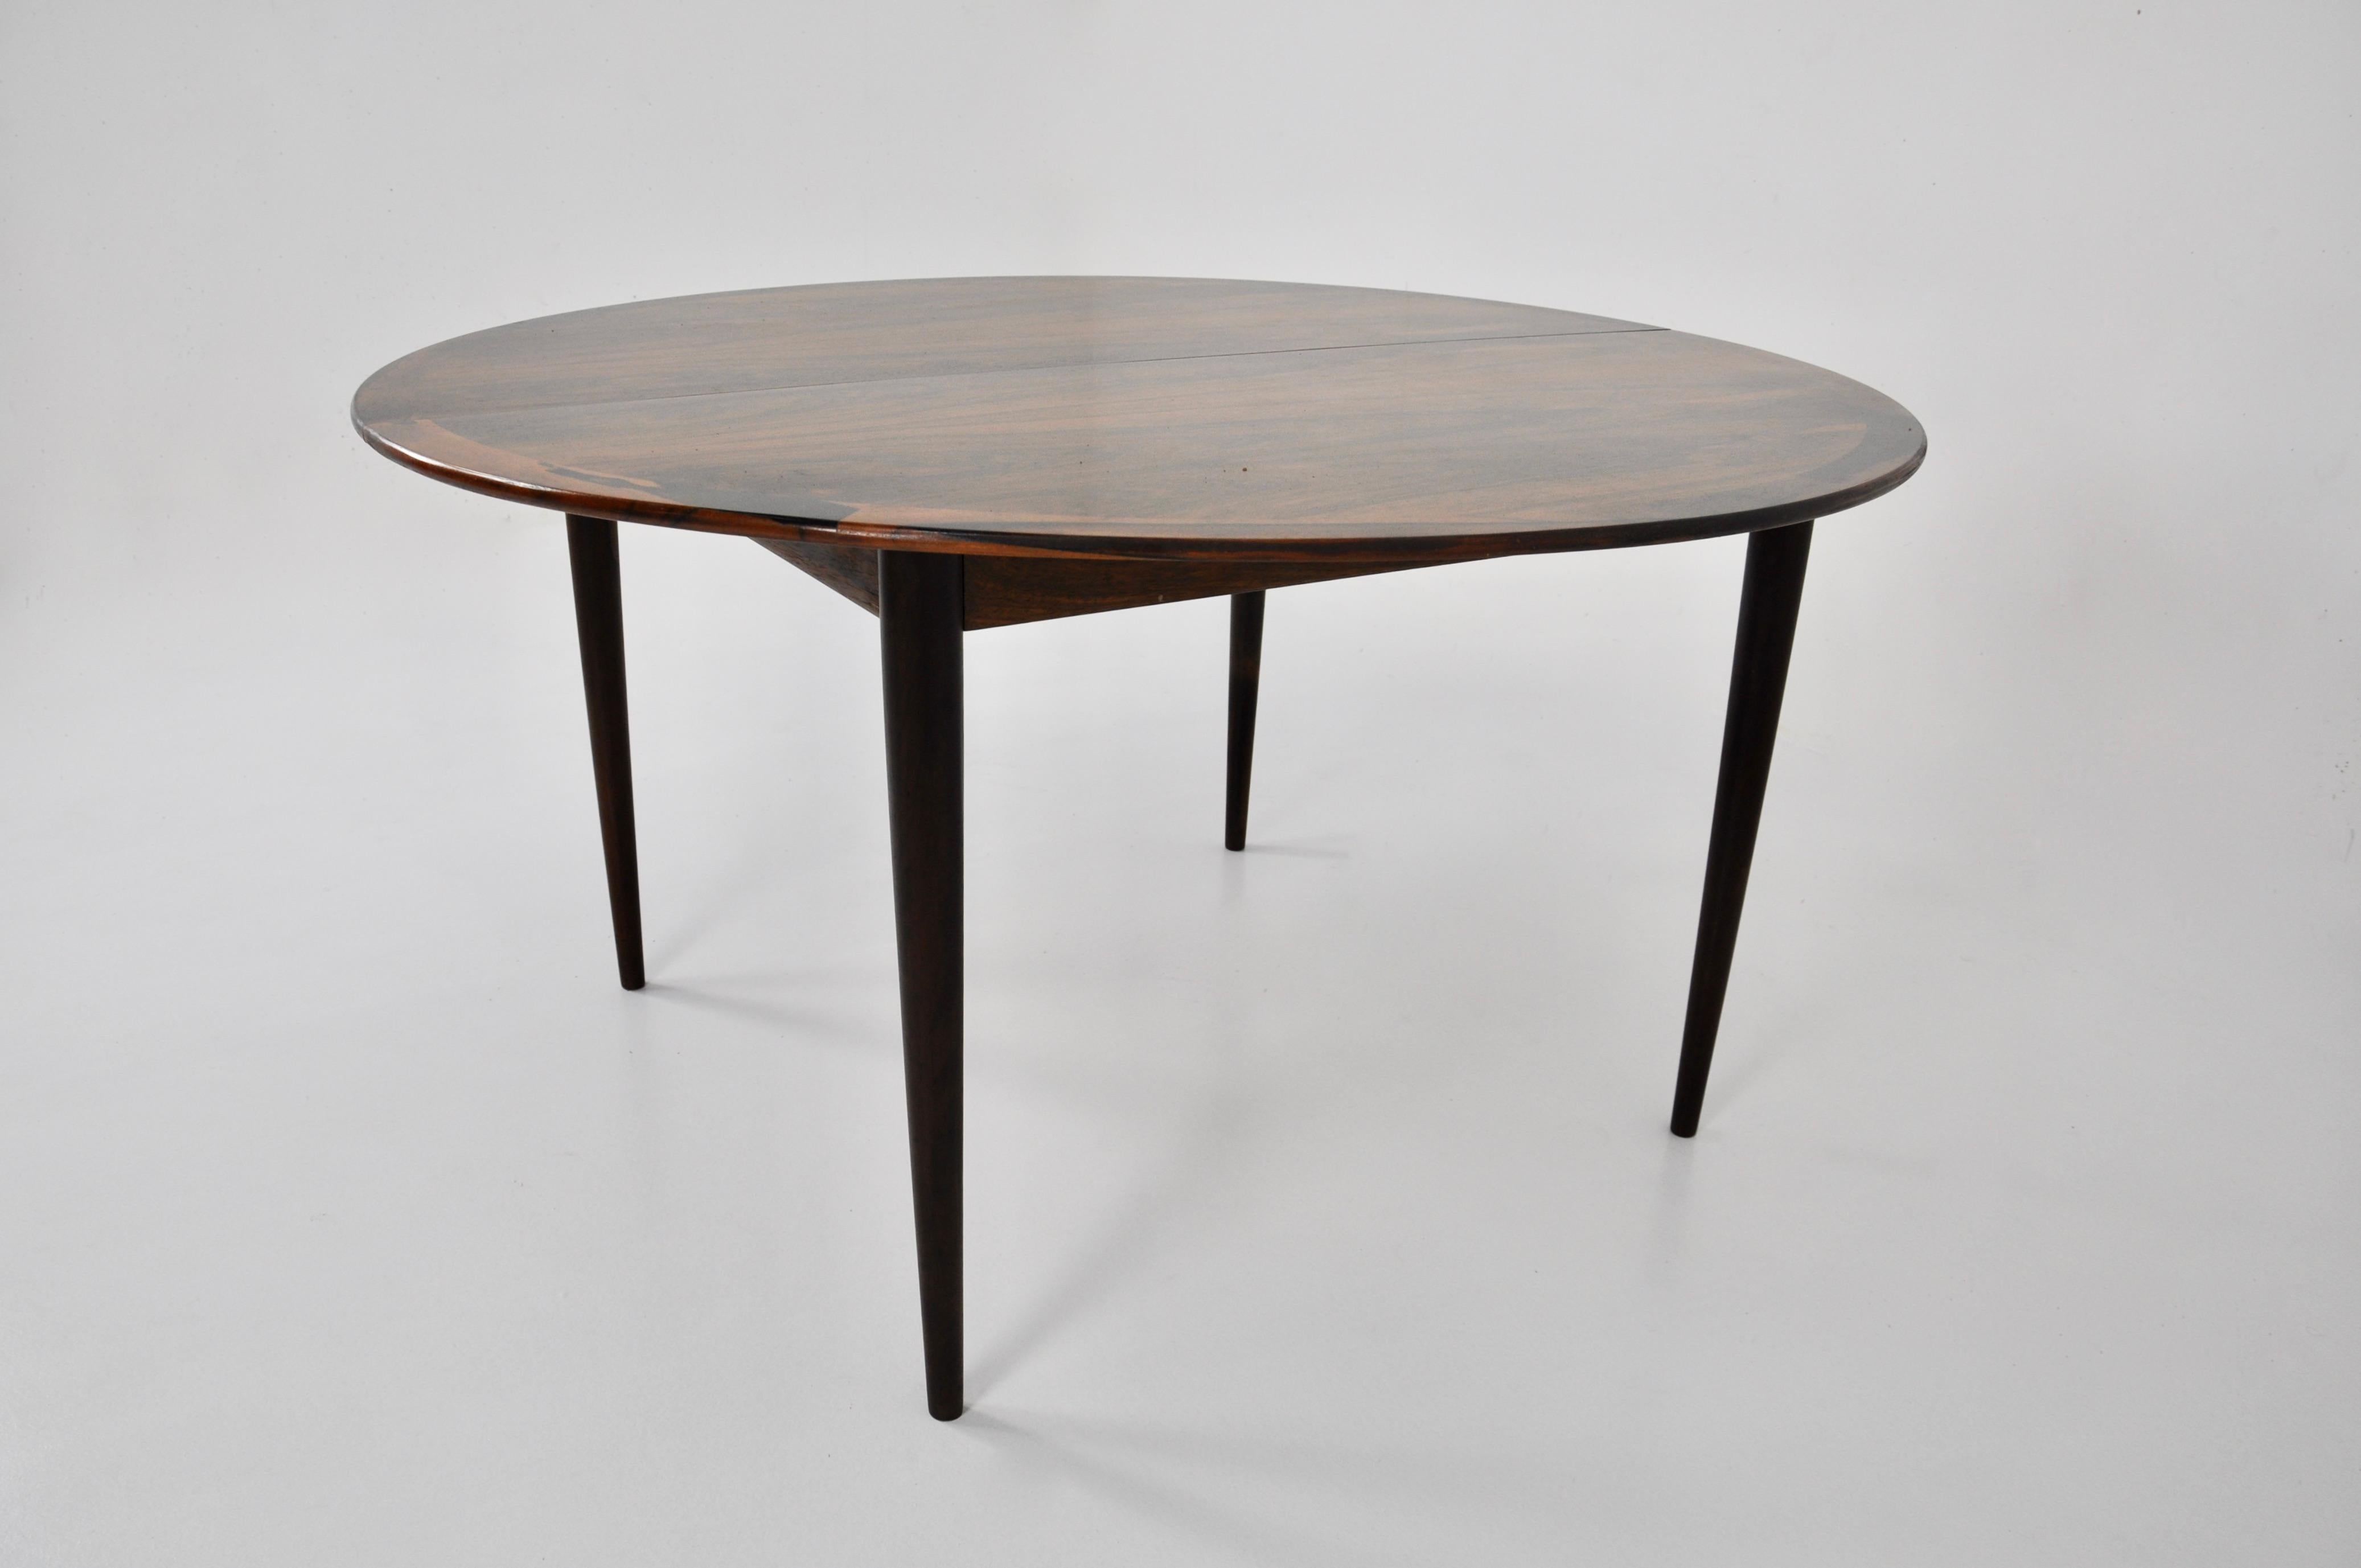 Table en bois extensible. Largeur maximale : 245 cm. Estampillé Grete Jalk et Cj Rosengaarden. Usure due au temps et à l'âge de la table.
  